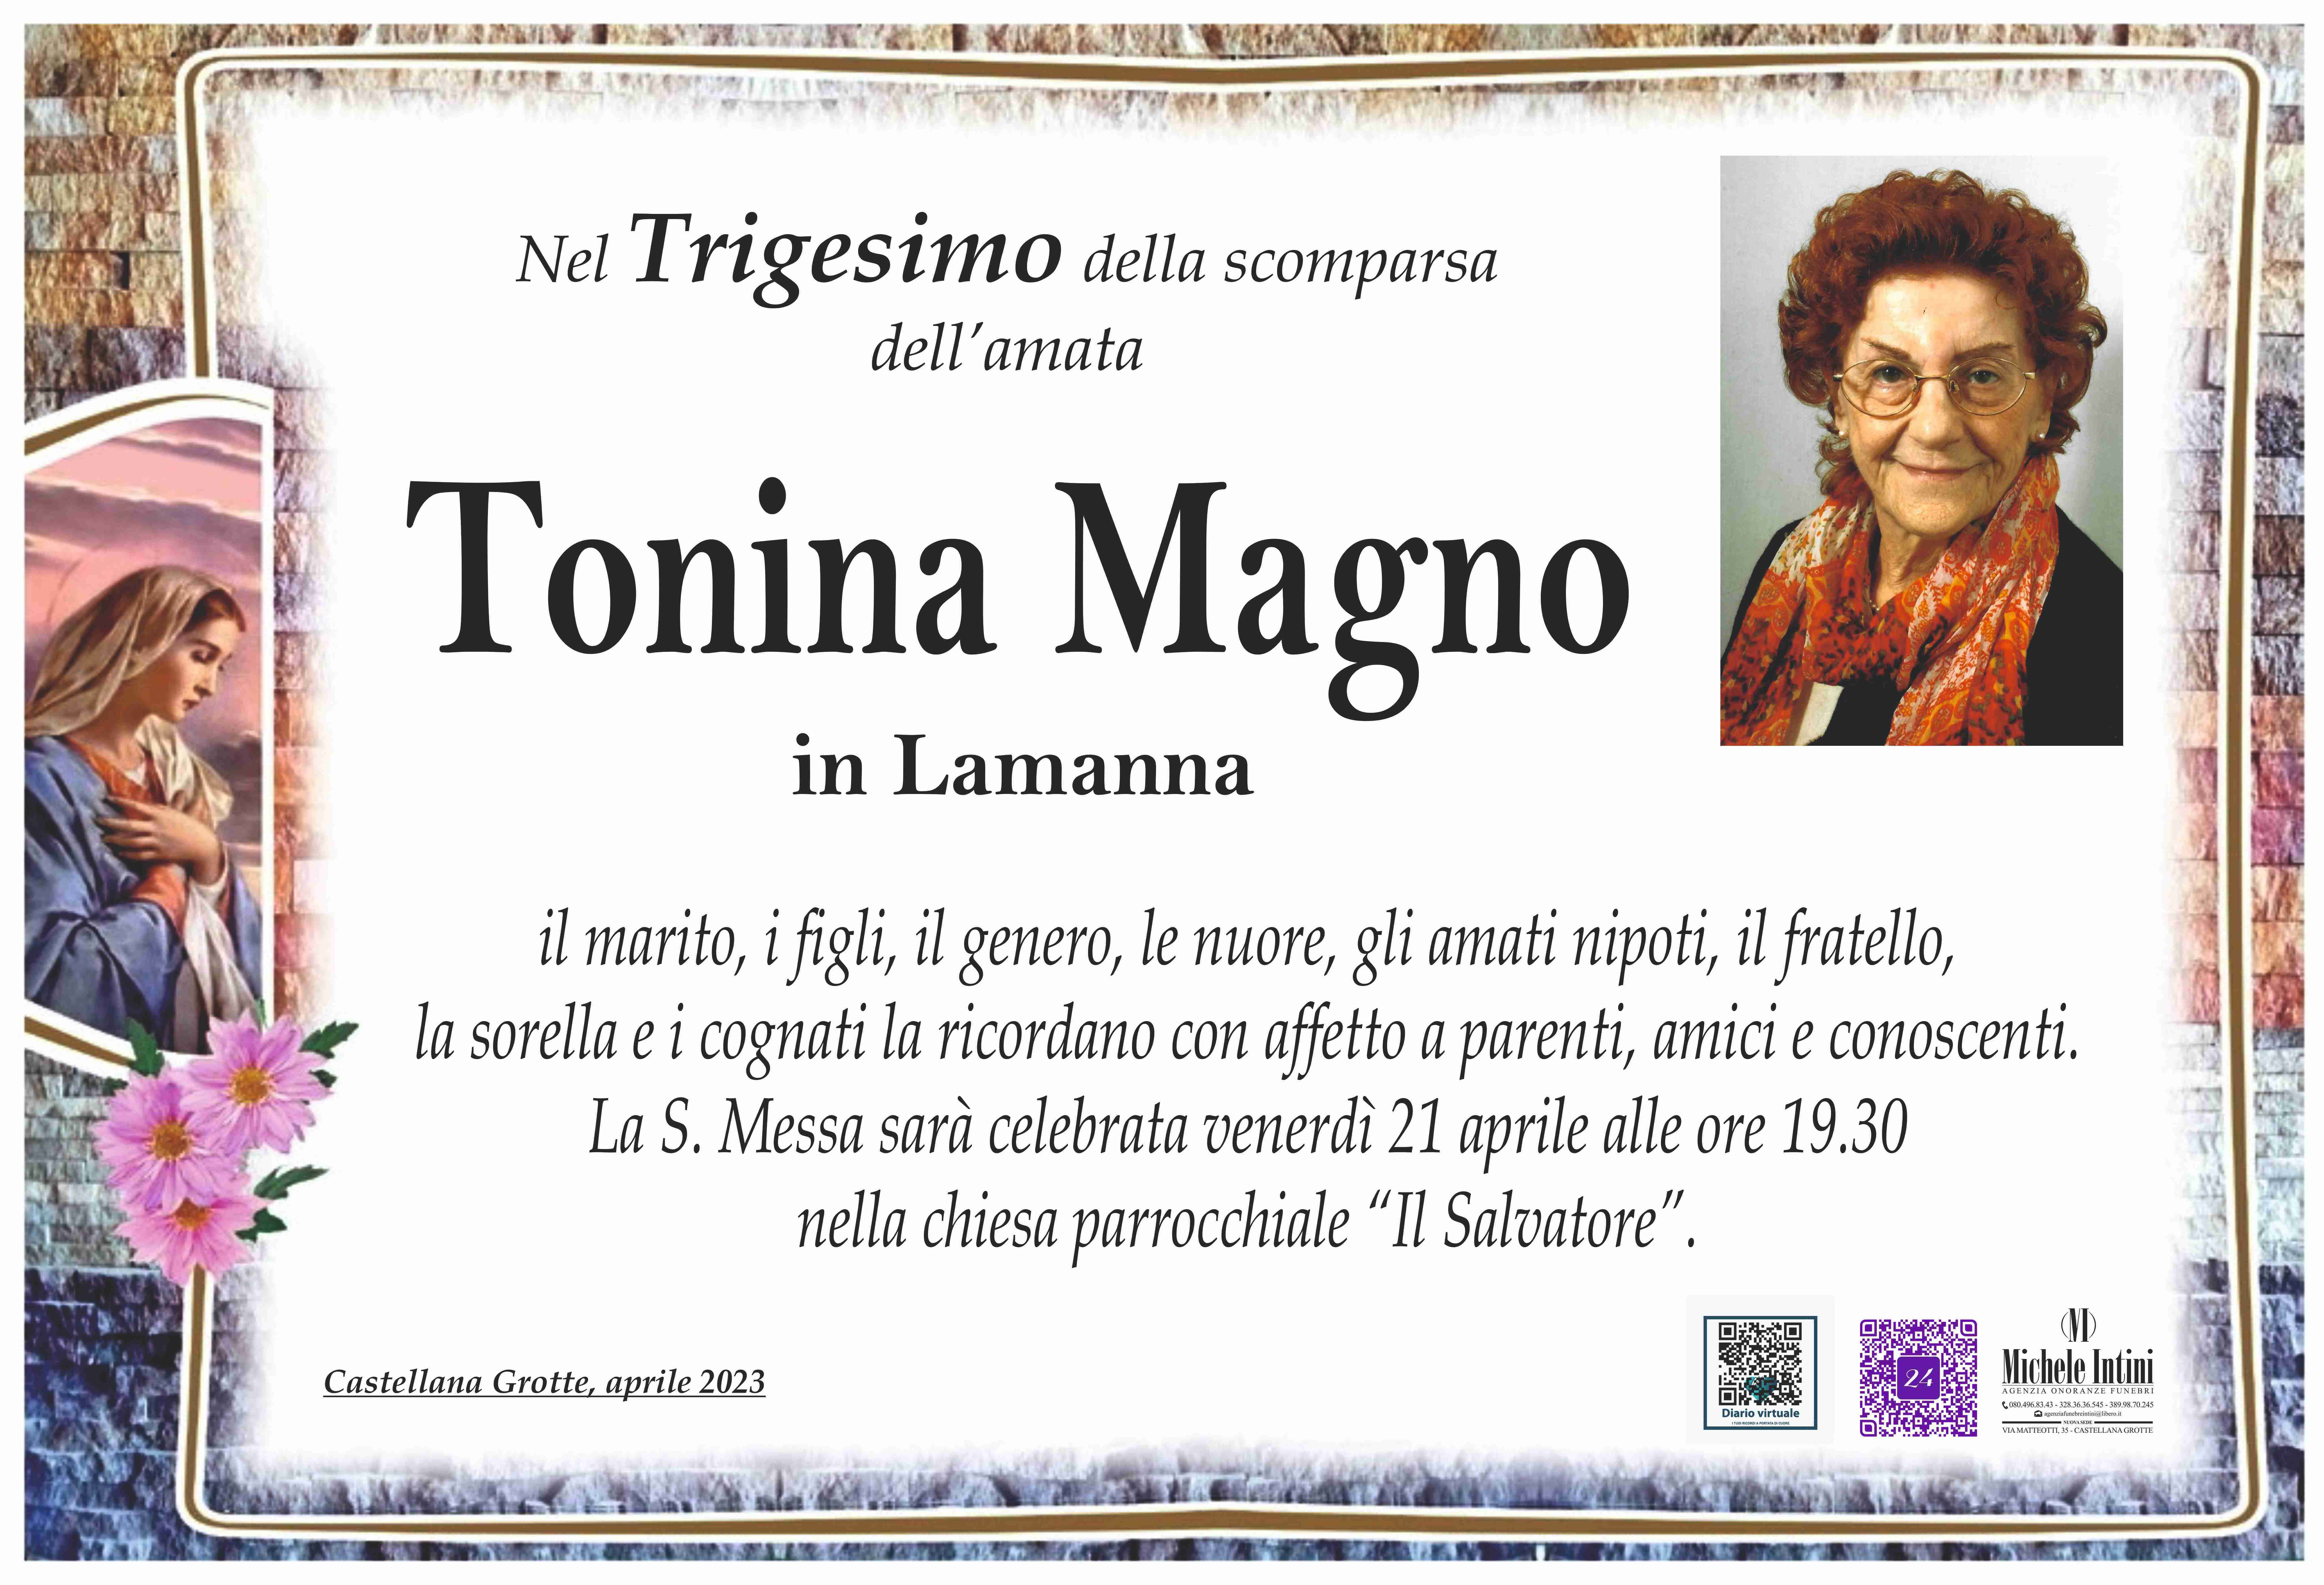 Tonina Magno